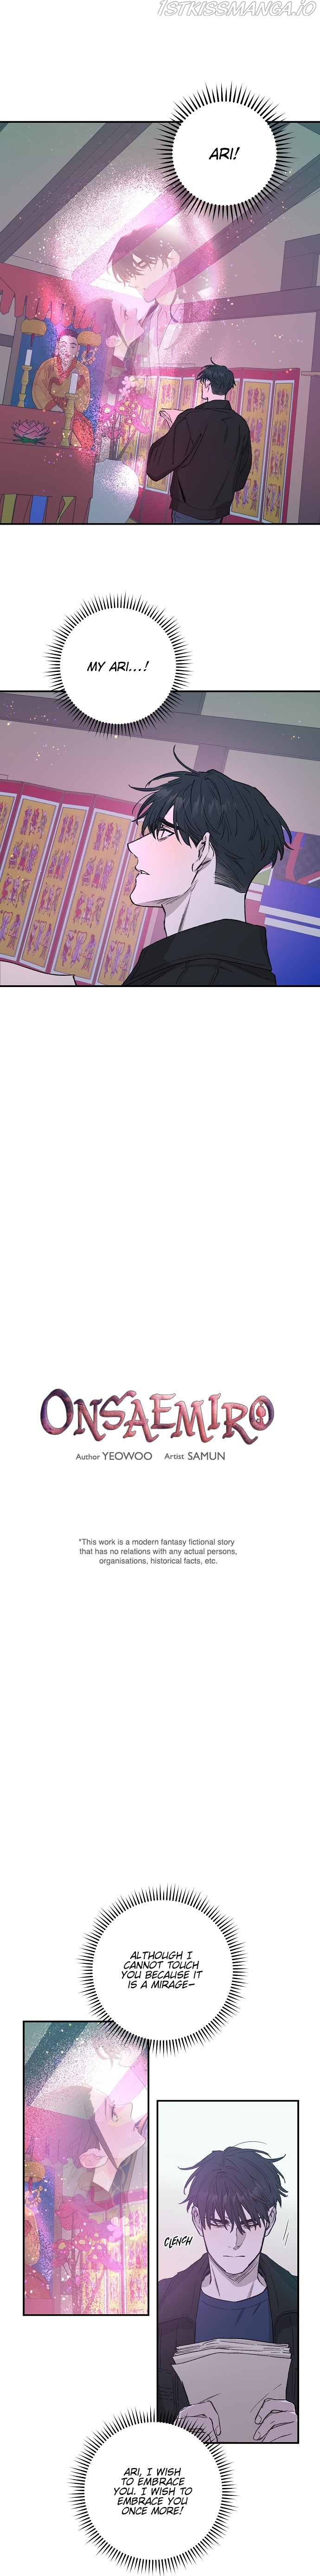 Onsaemiro Chapter 26 - Page 0